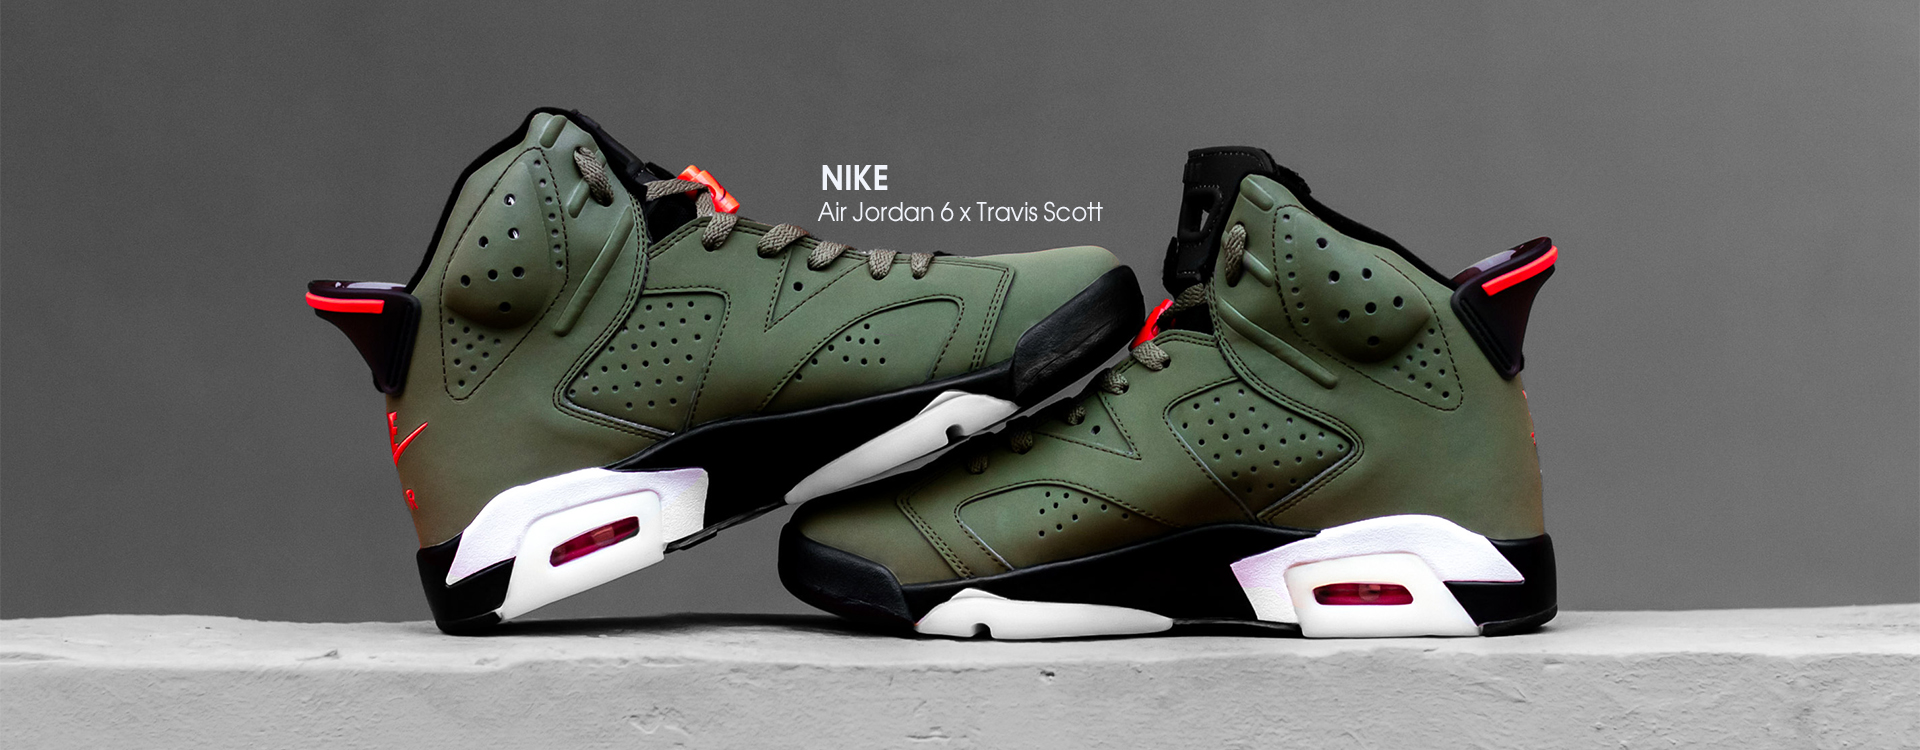 Кроссовки Travis Scott x Nike Air Jordan 6 